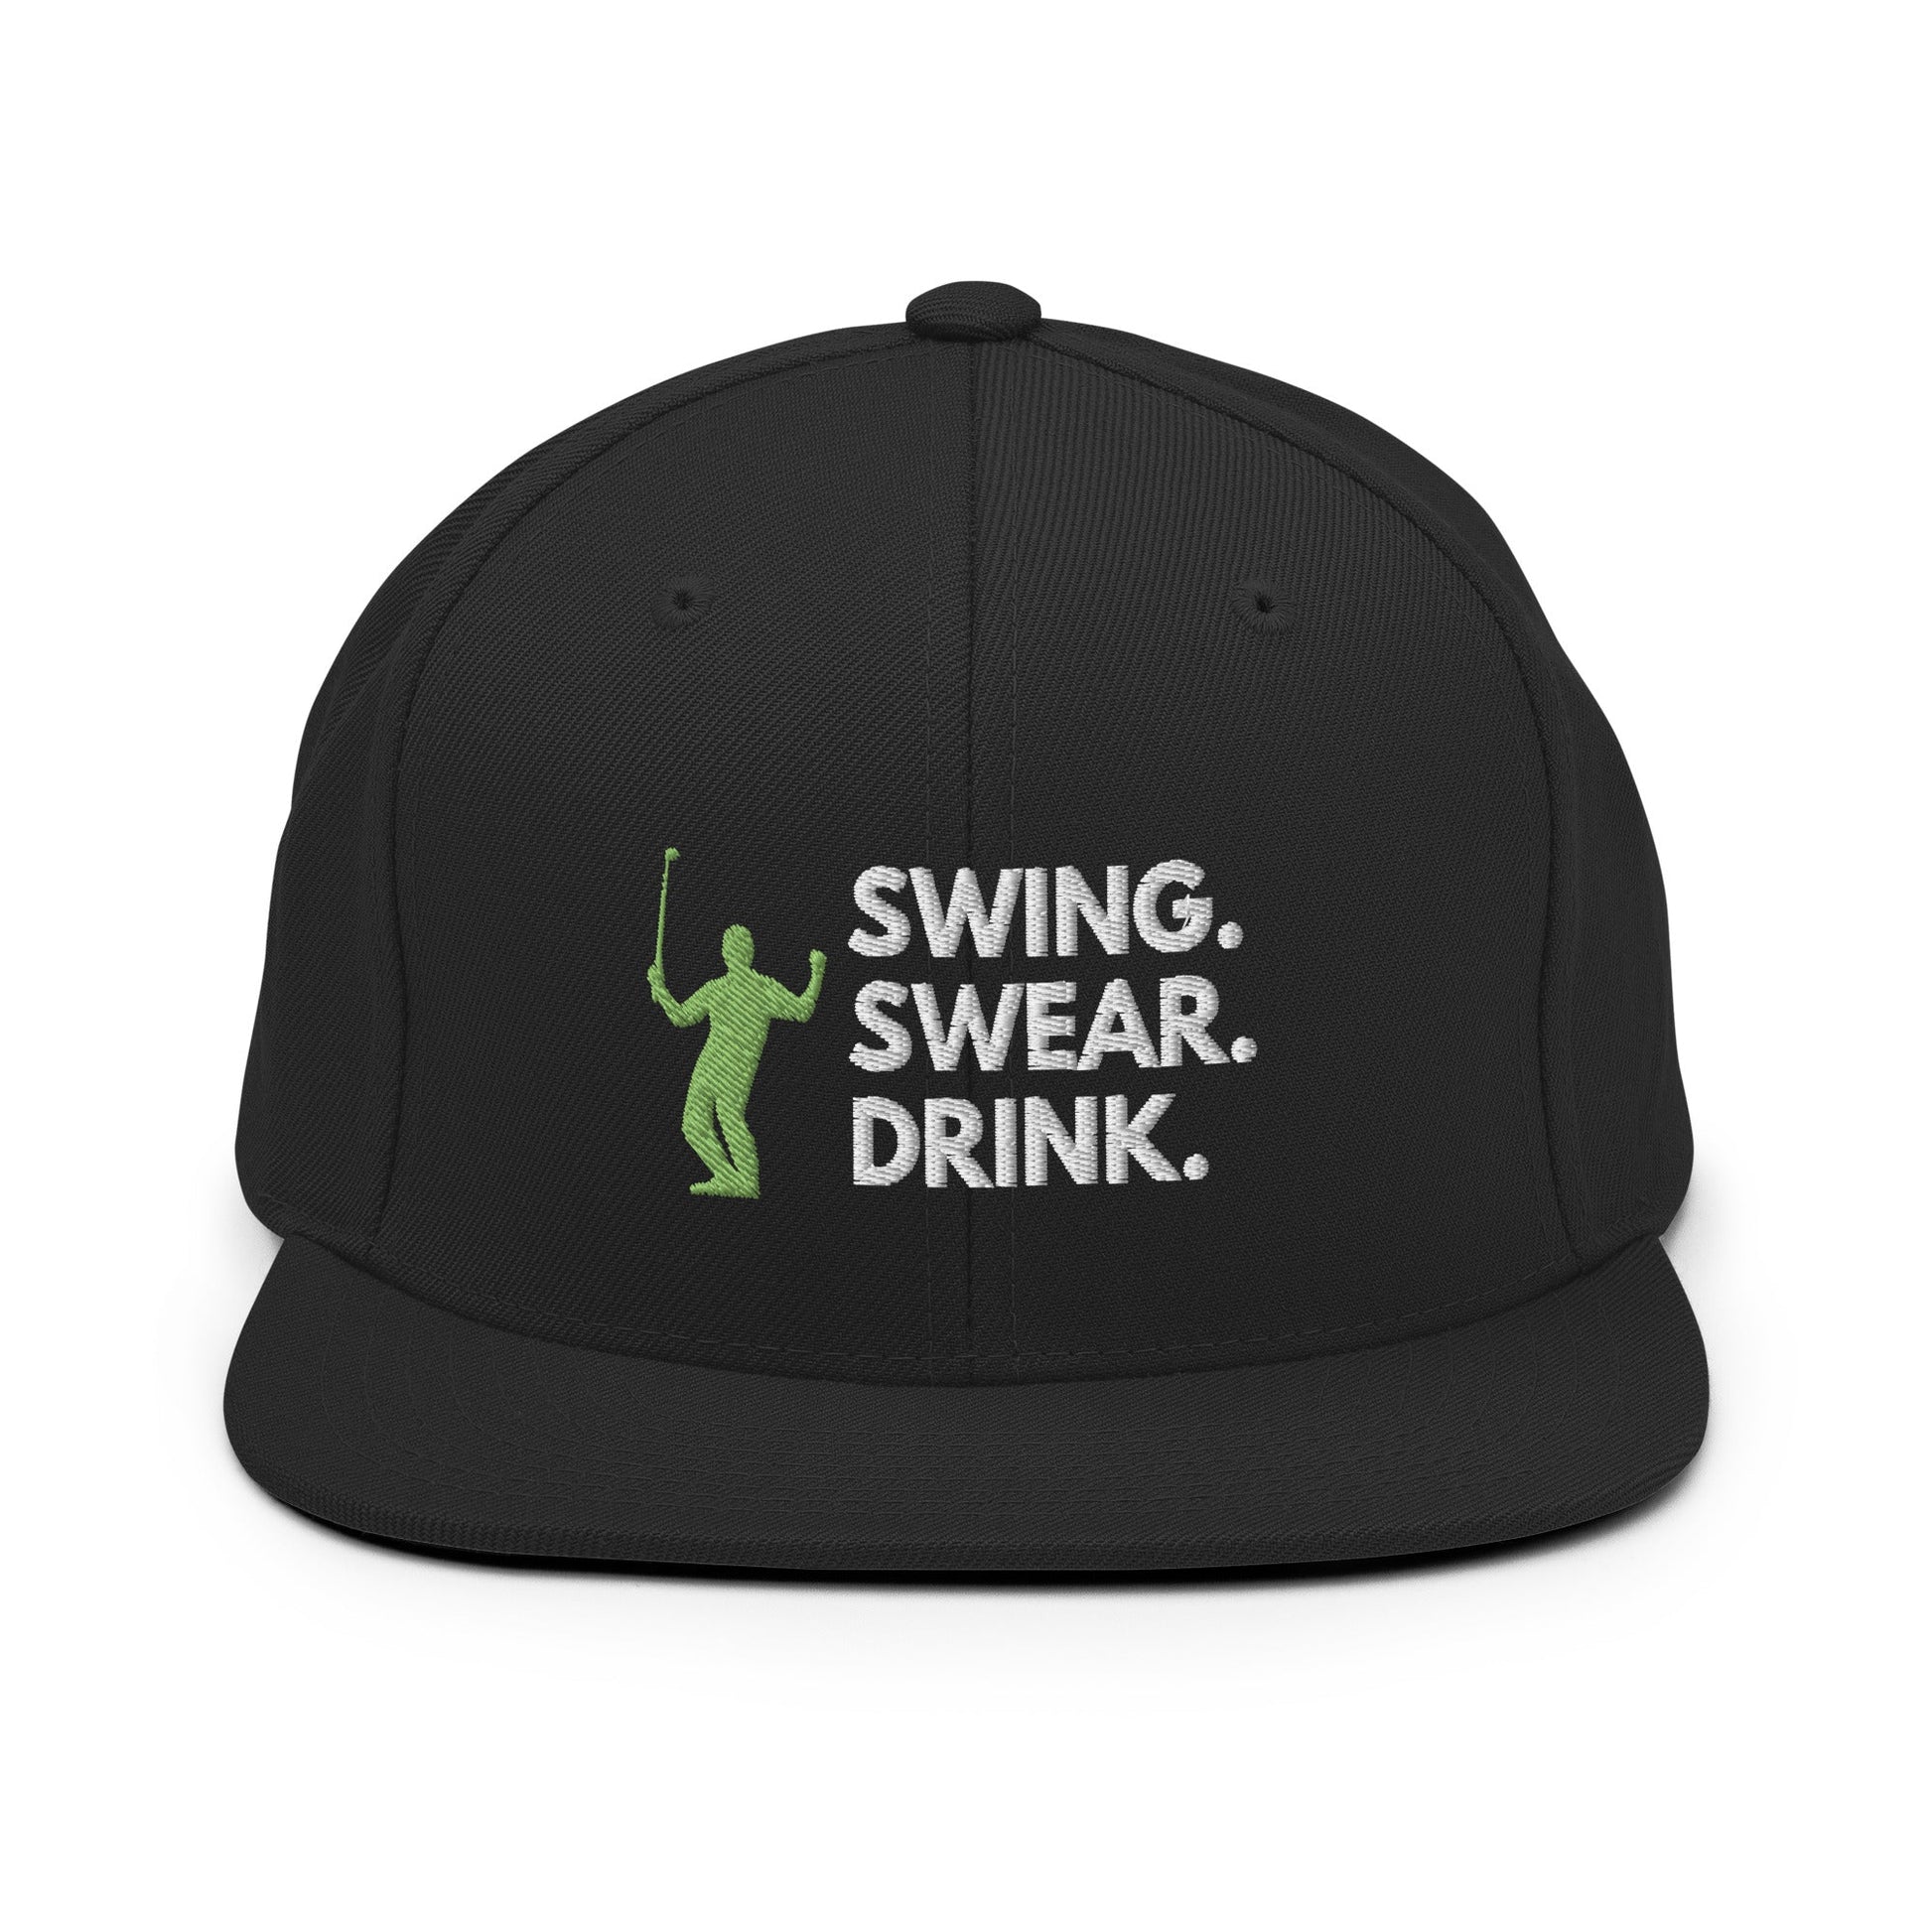 Funny Golfer Gifts  Snapback Hat Black Swing. Swear. Drink Snapback Hat